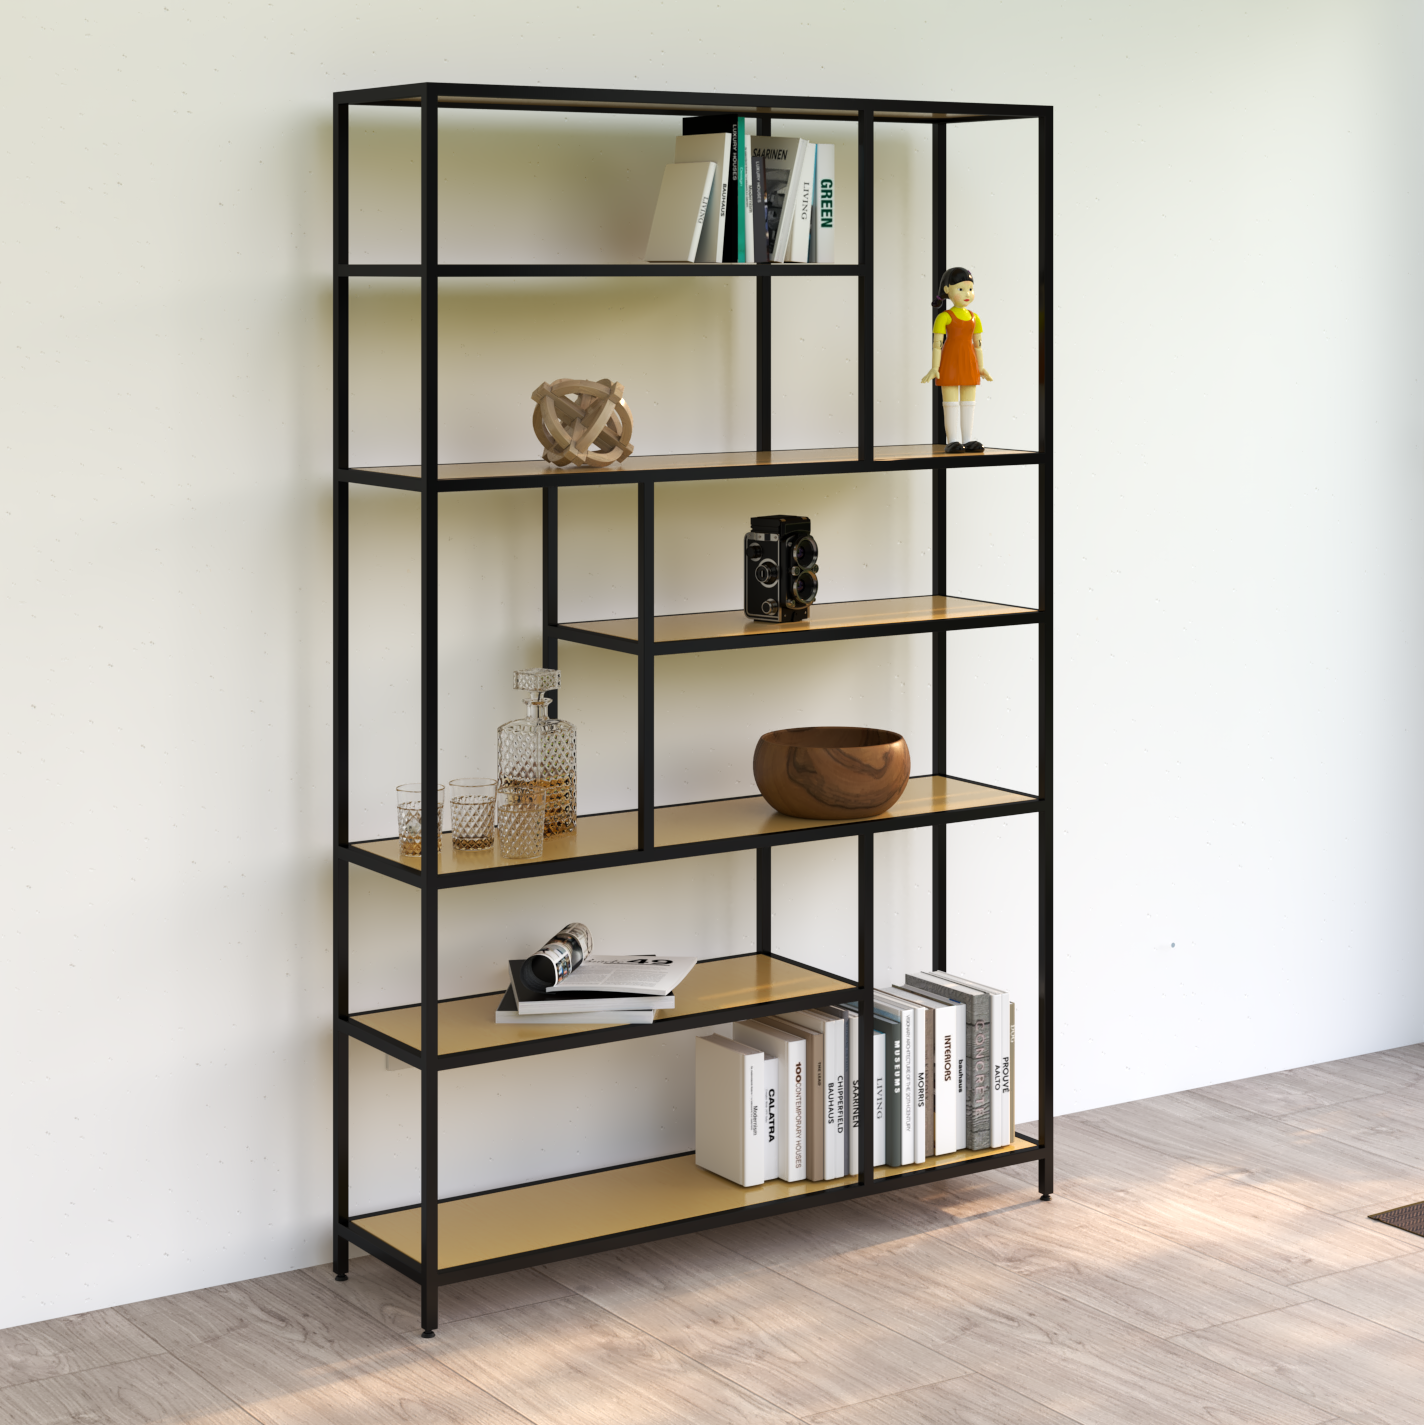 Librero estante metalico entrepaños de madera  solida estilo industrial  medidas: altura 1080 mts. 1.20 mts ancho y 33 cm de ancho.